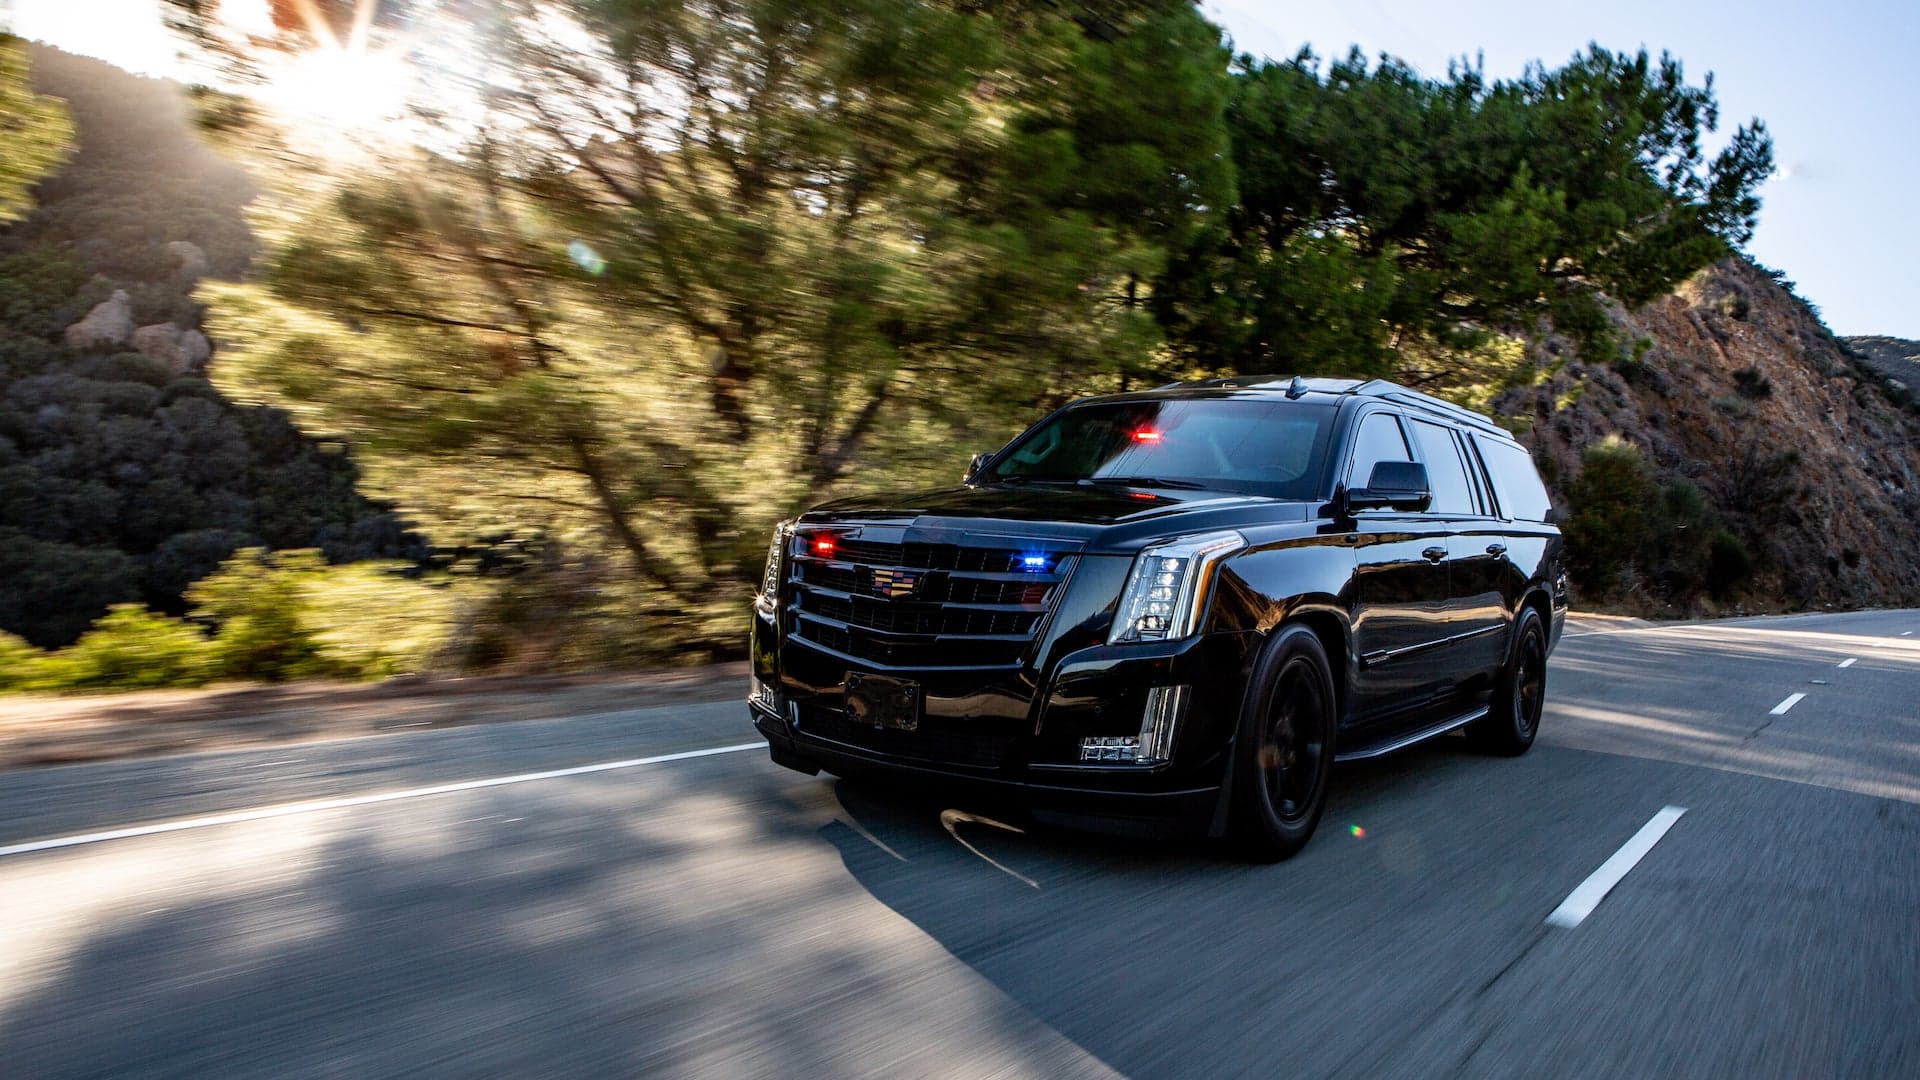 This $350,000 Armored Cadillac Escalade Has Gun Ports, Electric-Shock Doors, Smokescreen Systems